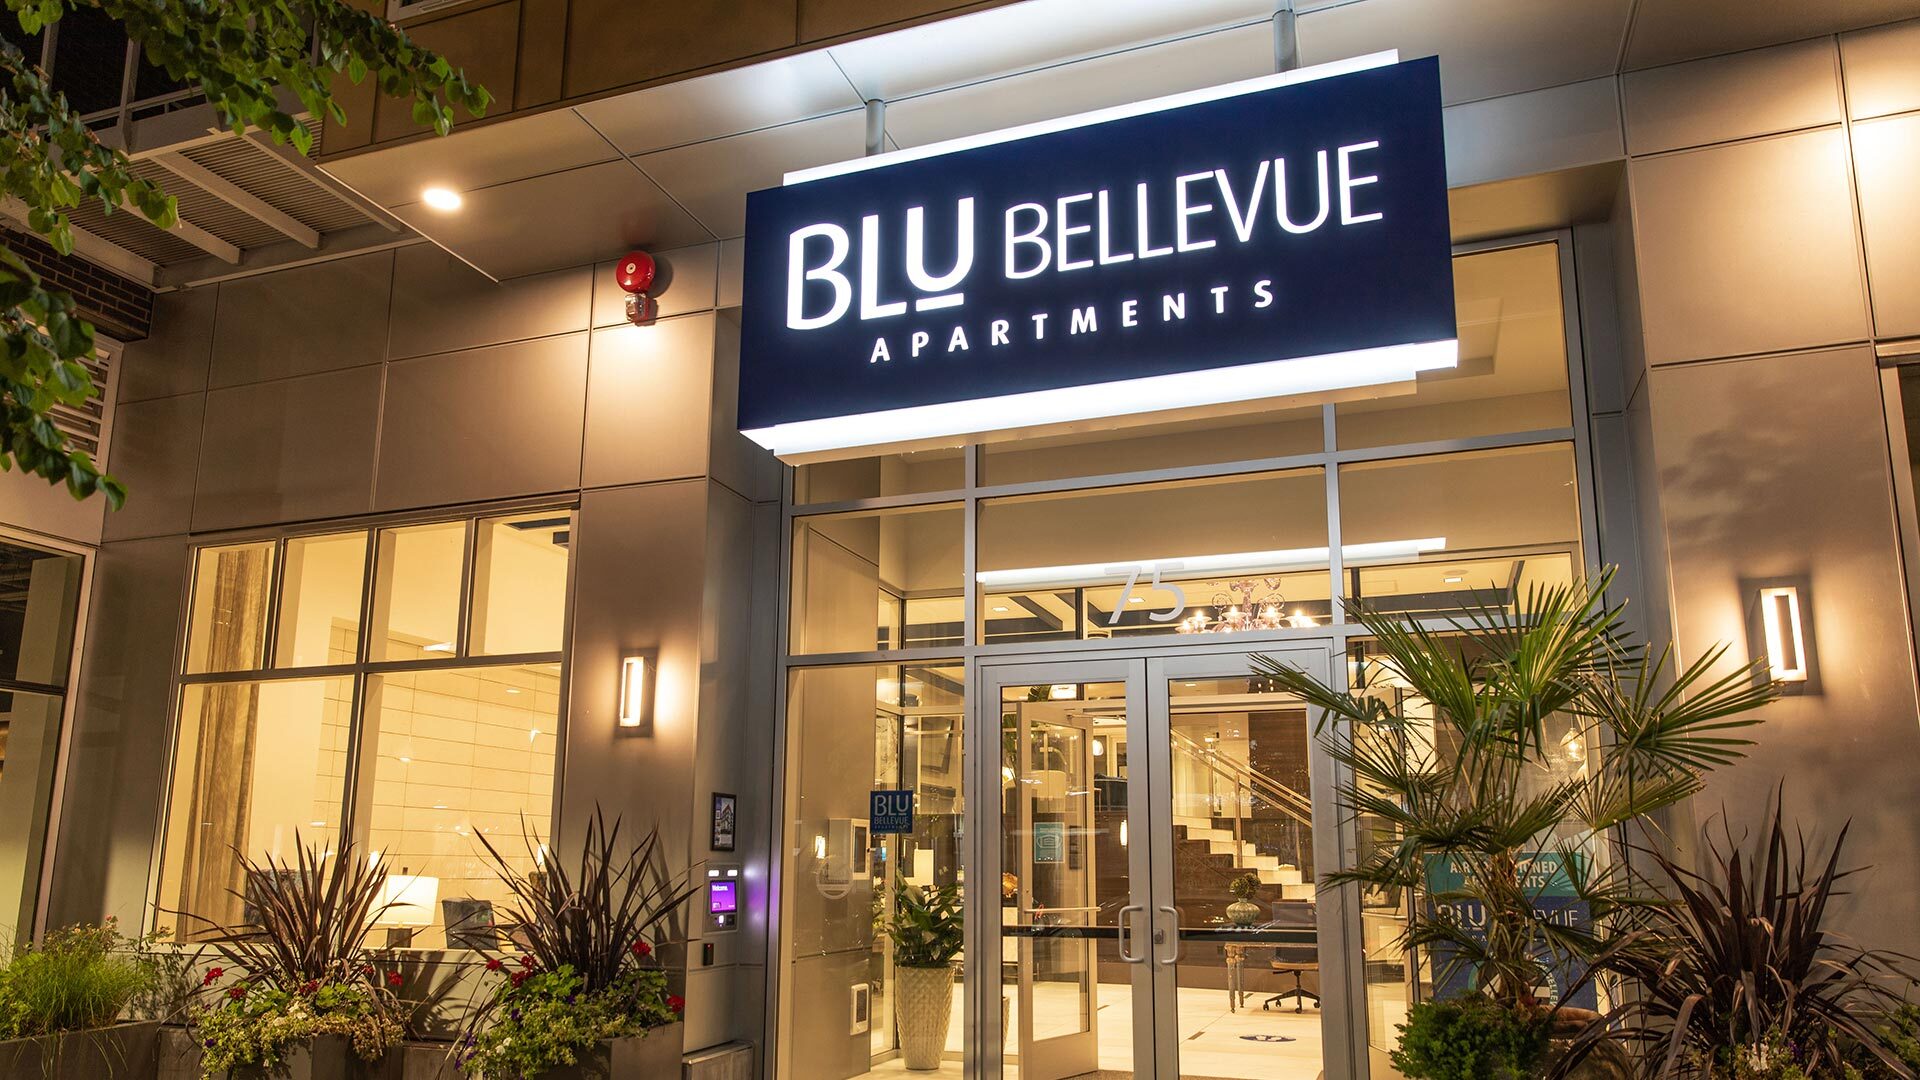 Blu bellevue front door sign evening